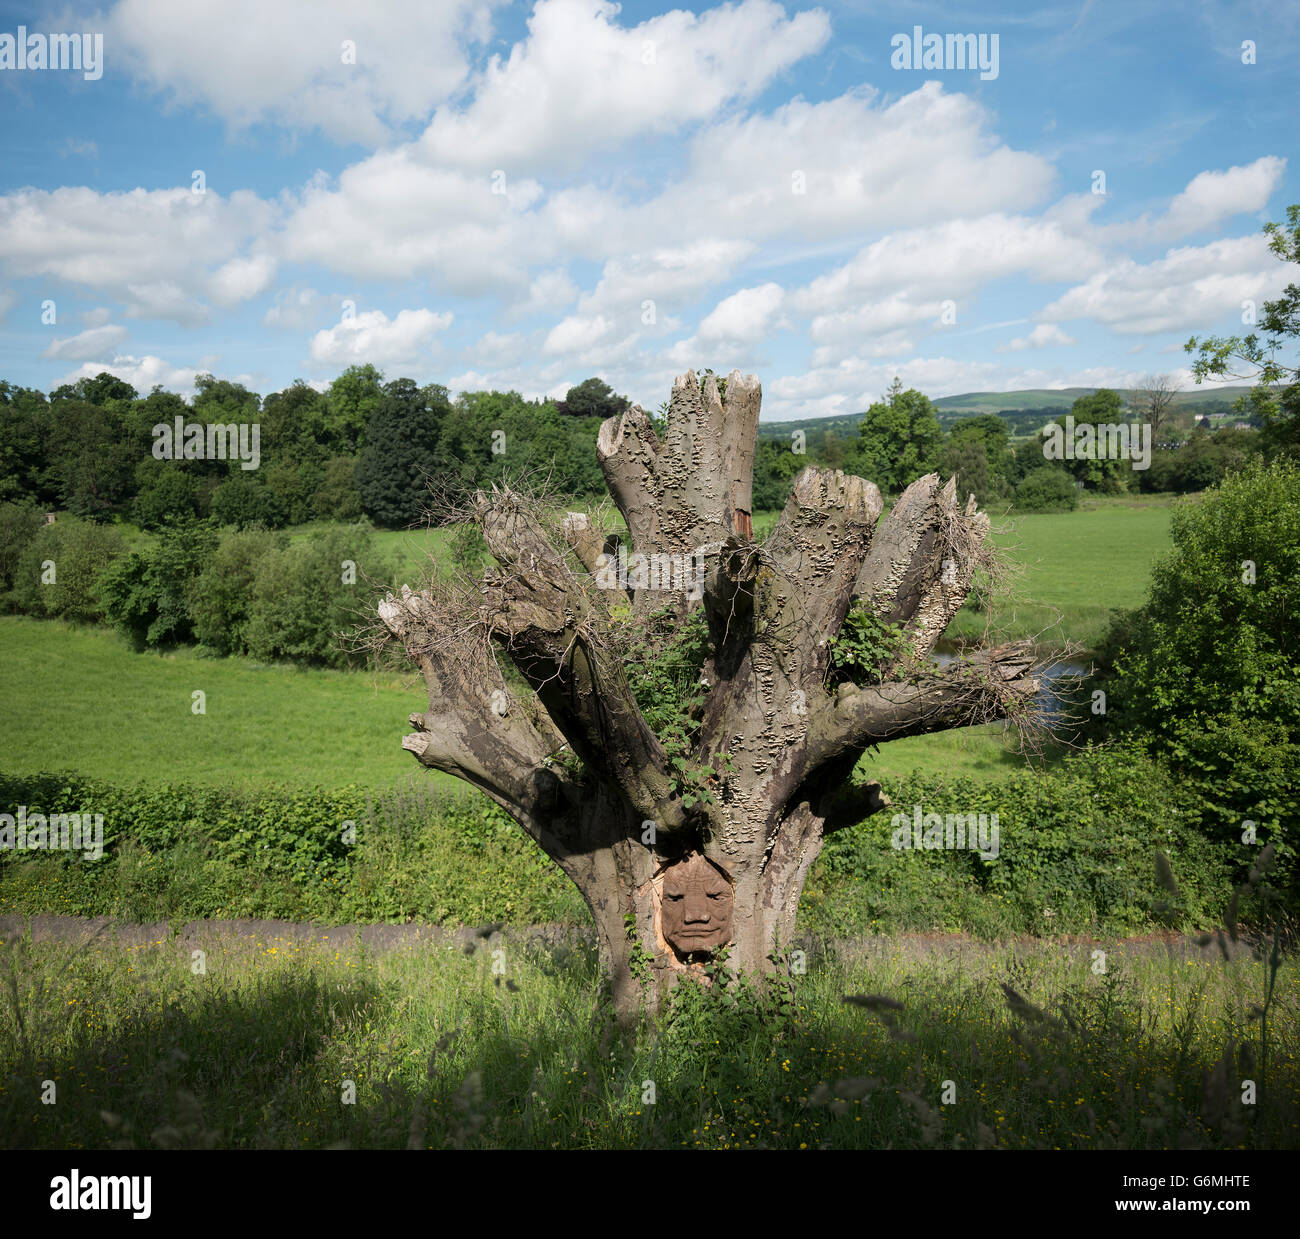 Face à l'arborescence, Brungerley Sculpture Park, Clitheroe, vallée de Ribble, UK Banque D'Images